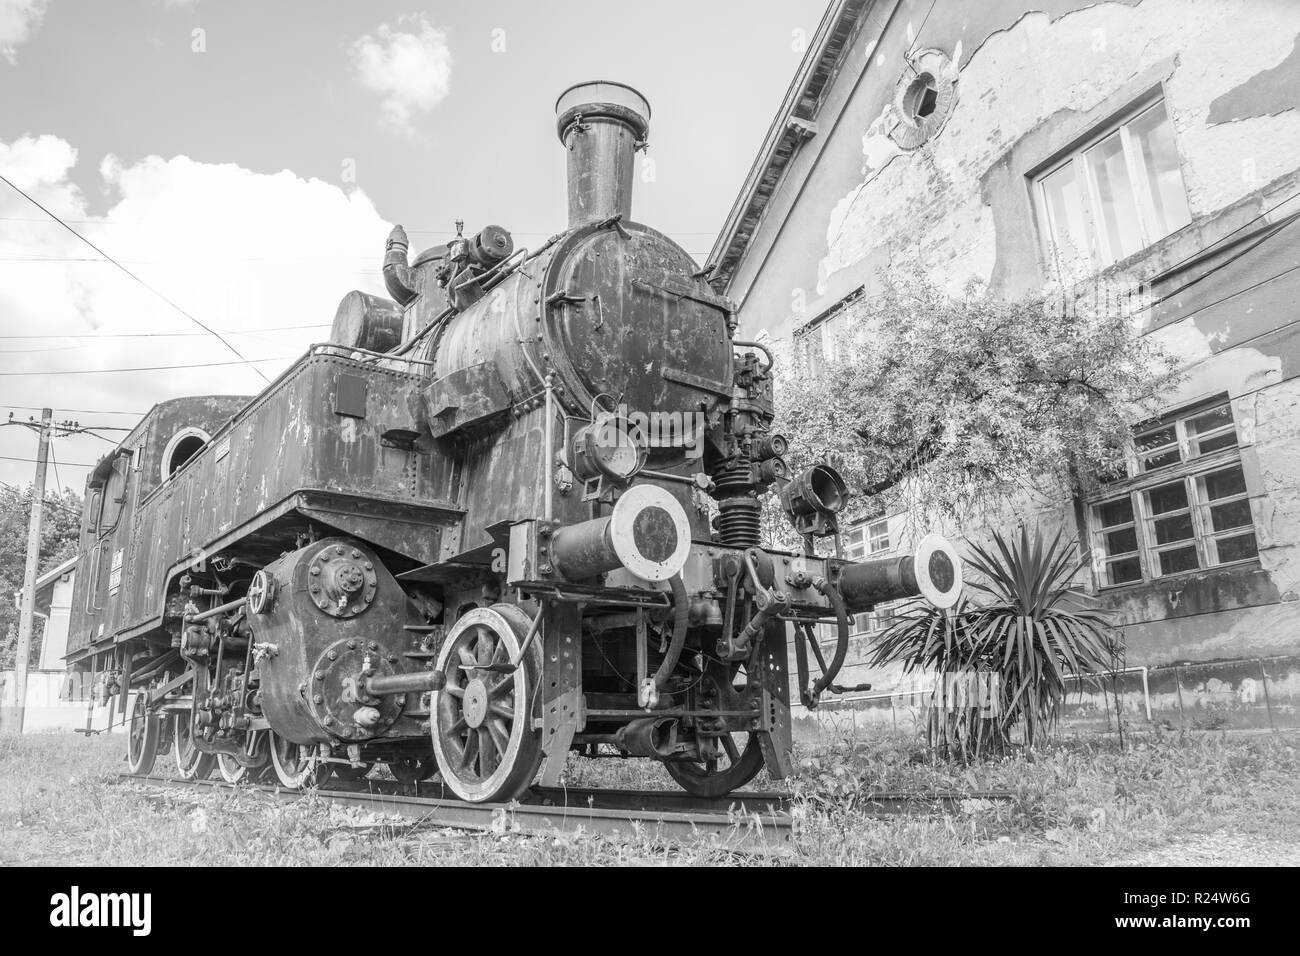 Jugoslawische Zug in der Nähe von alten Bahnhof in der Stadt Vrsac Serbien Osten Europa, Schwarz und Weiß Stockfoto